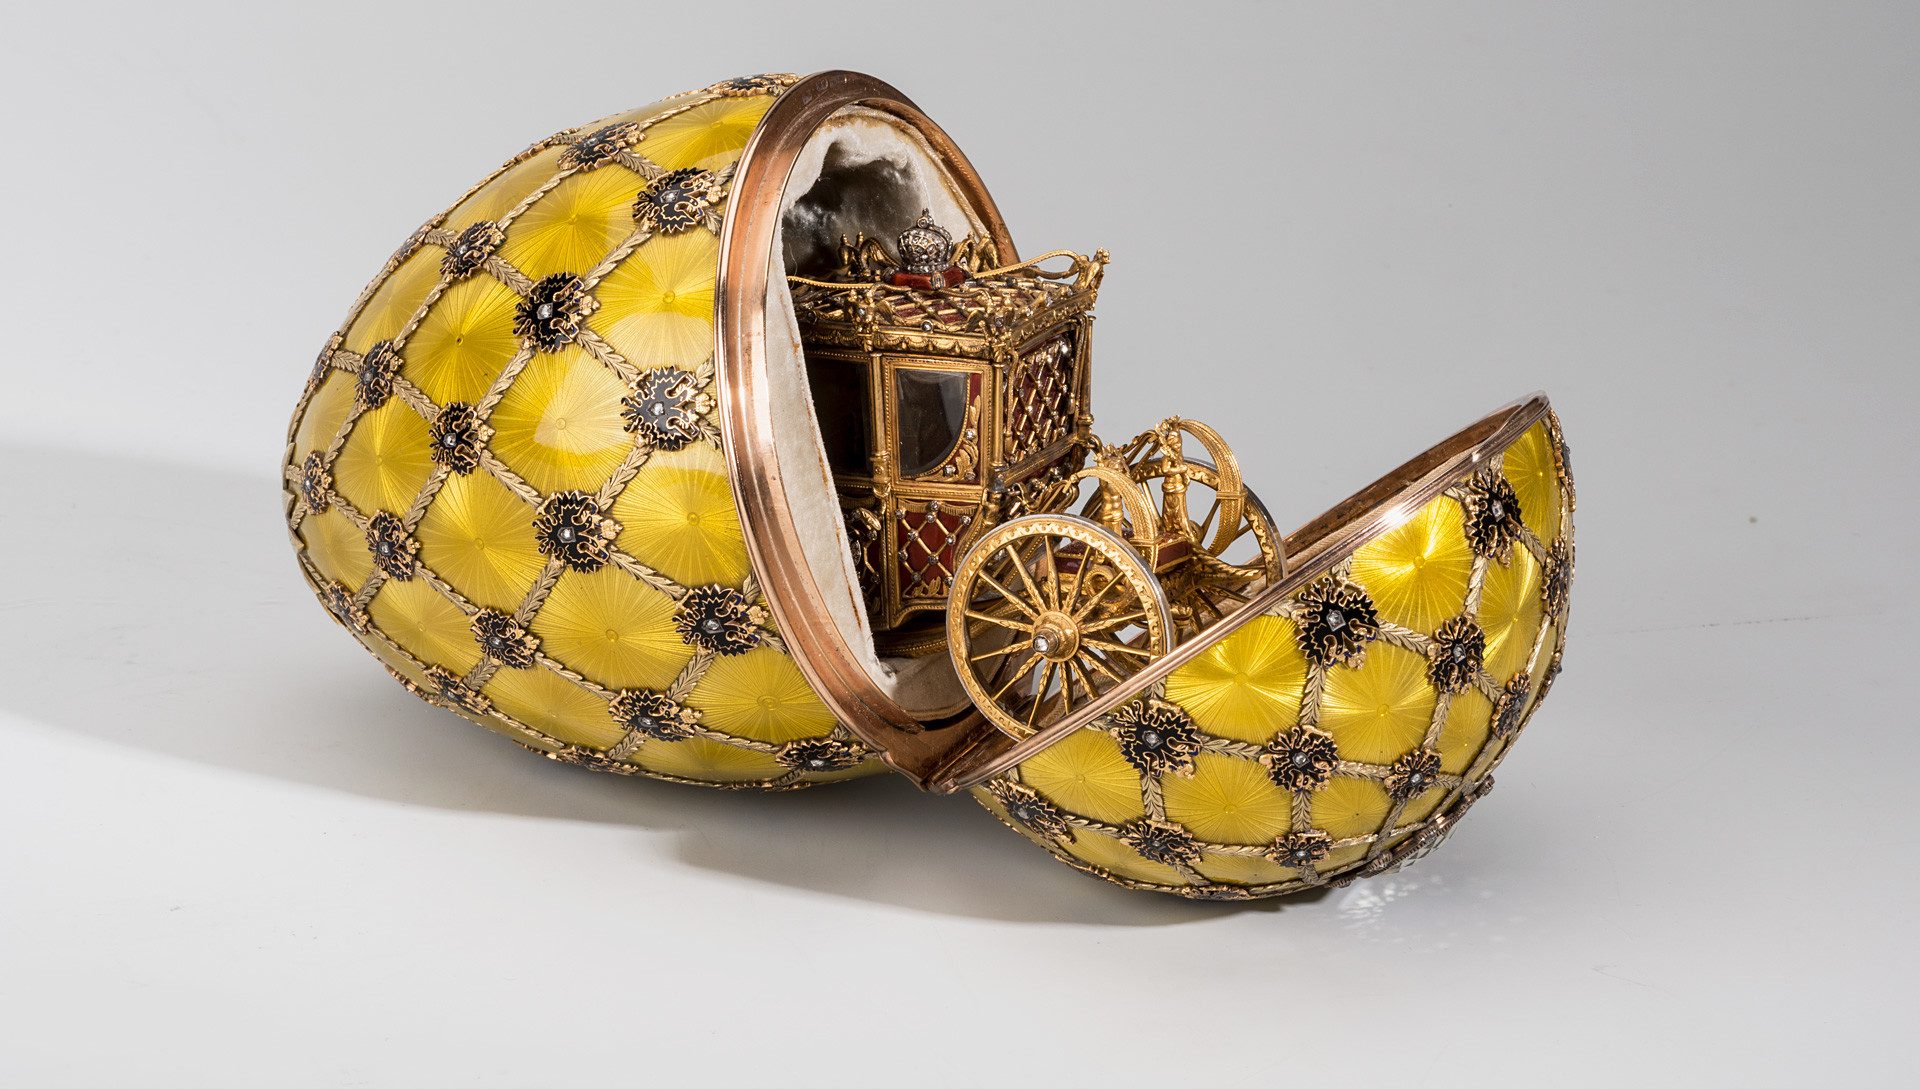 Jedním z nejkrásnějších a nejcennějších exemplářů bylo Císařské korunovační vejce, jehož cena byla vyhodnocena na 20 milionů amerických dolarů.